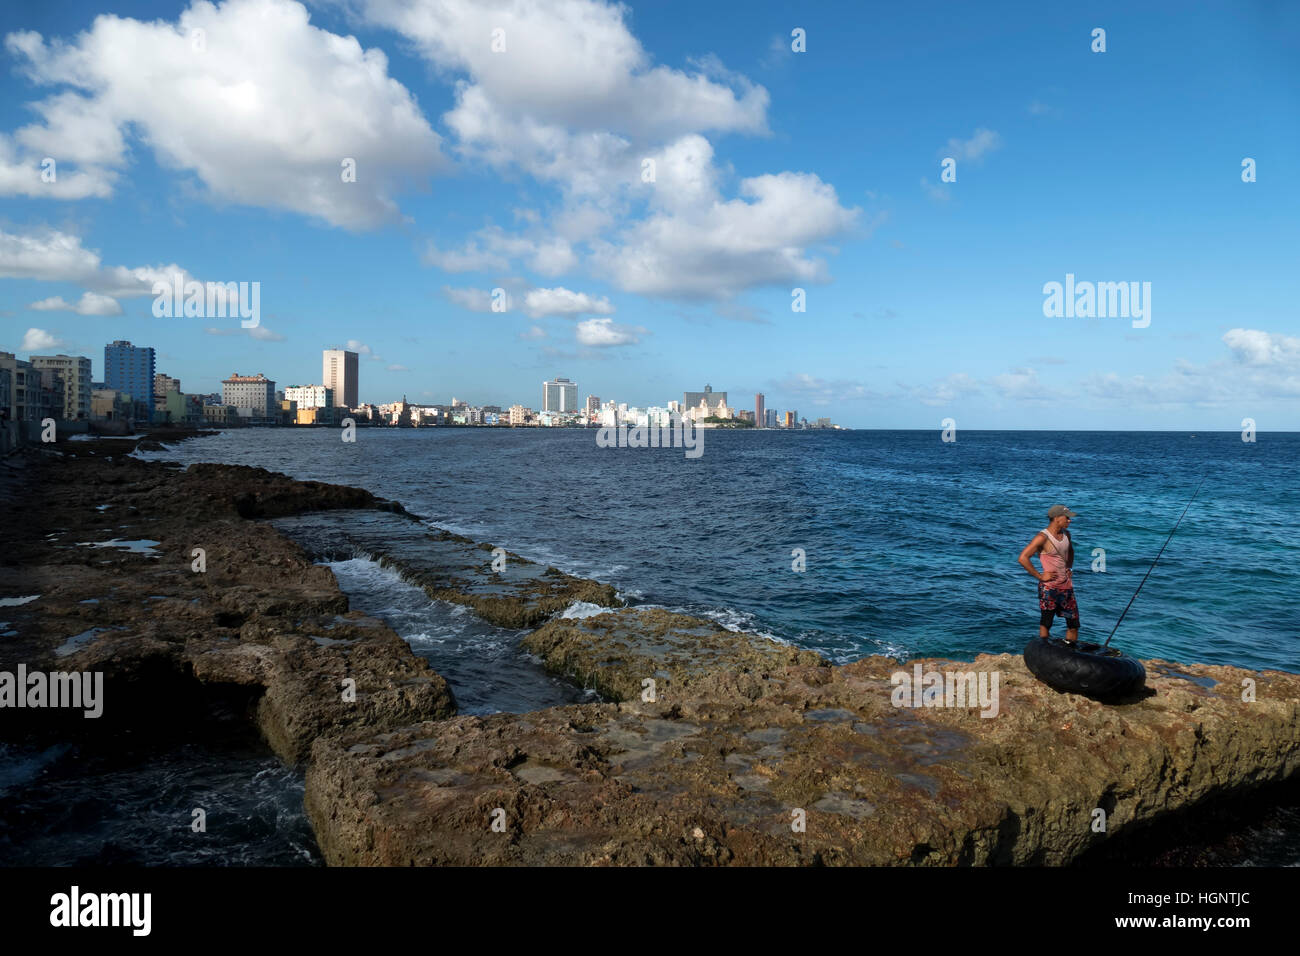 Vista di Havana, Cuba. Città cubane skyline con Malecon promenade, edifici e il mare dei Caraibi Foto Stock